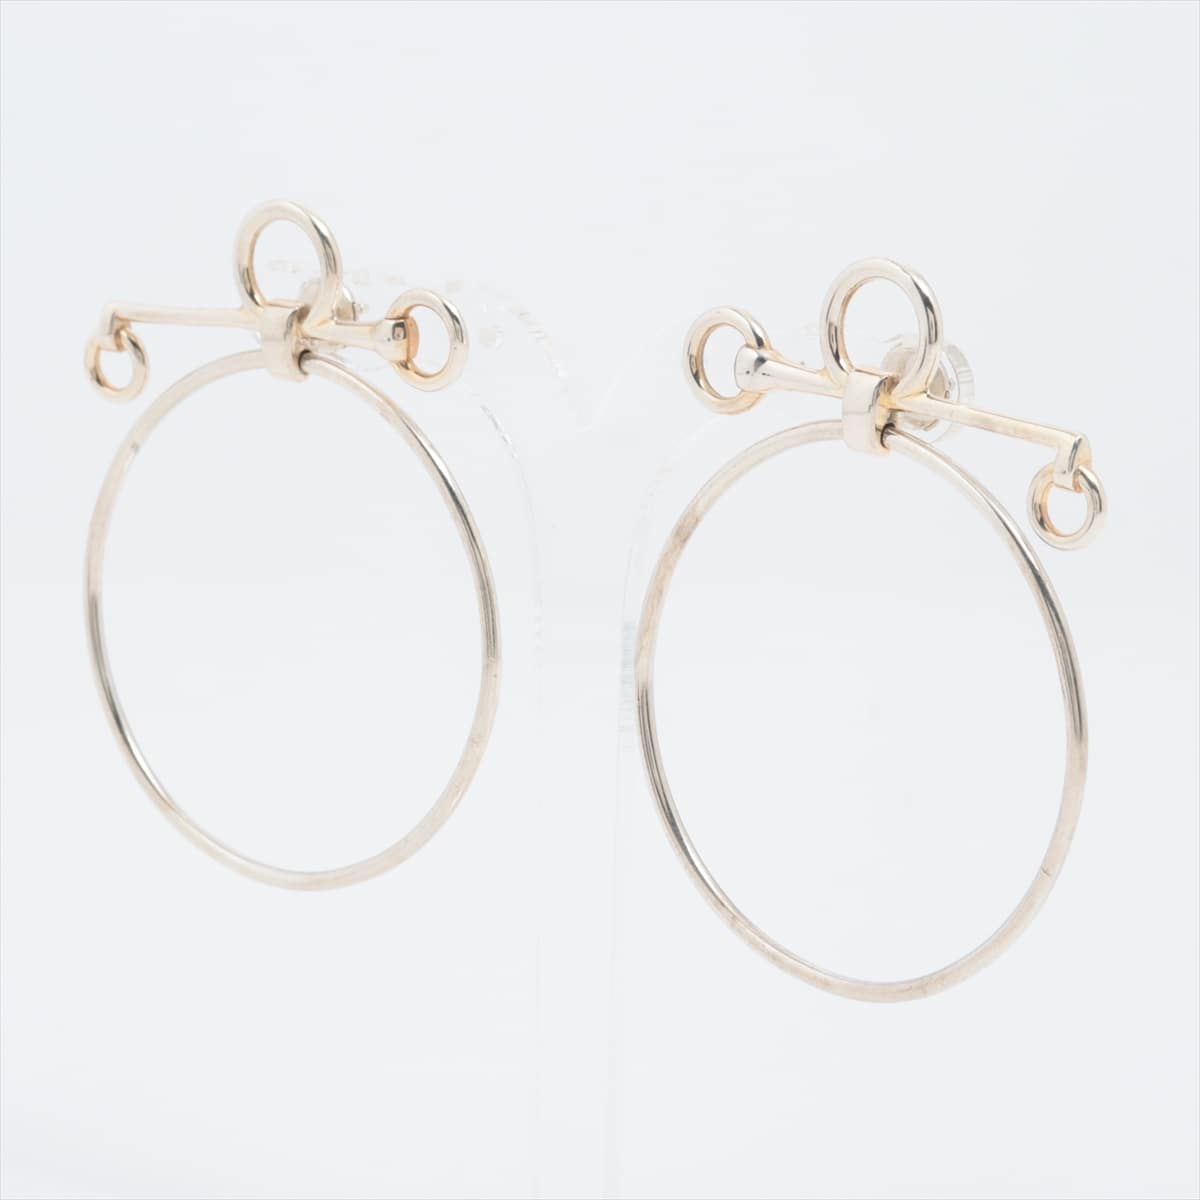 Hermès Loop Medium Piercing jewelry (for both ears) 925 15.4g Silver